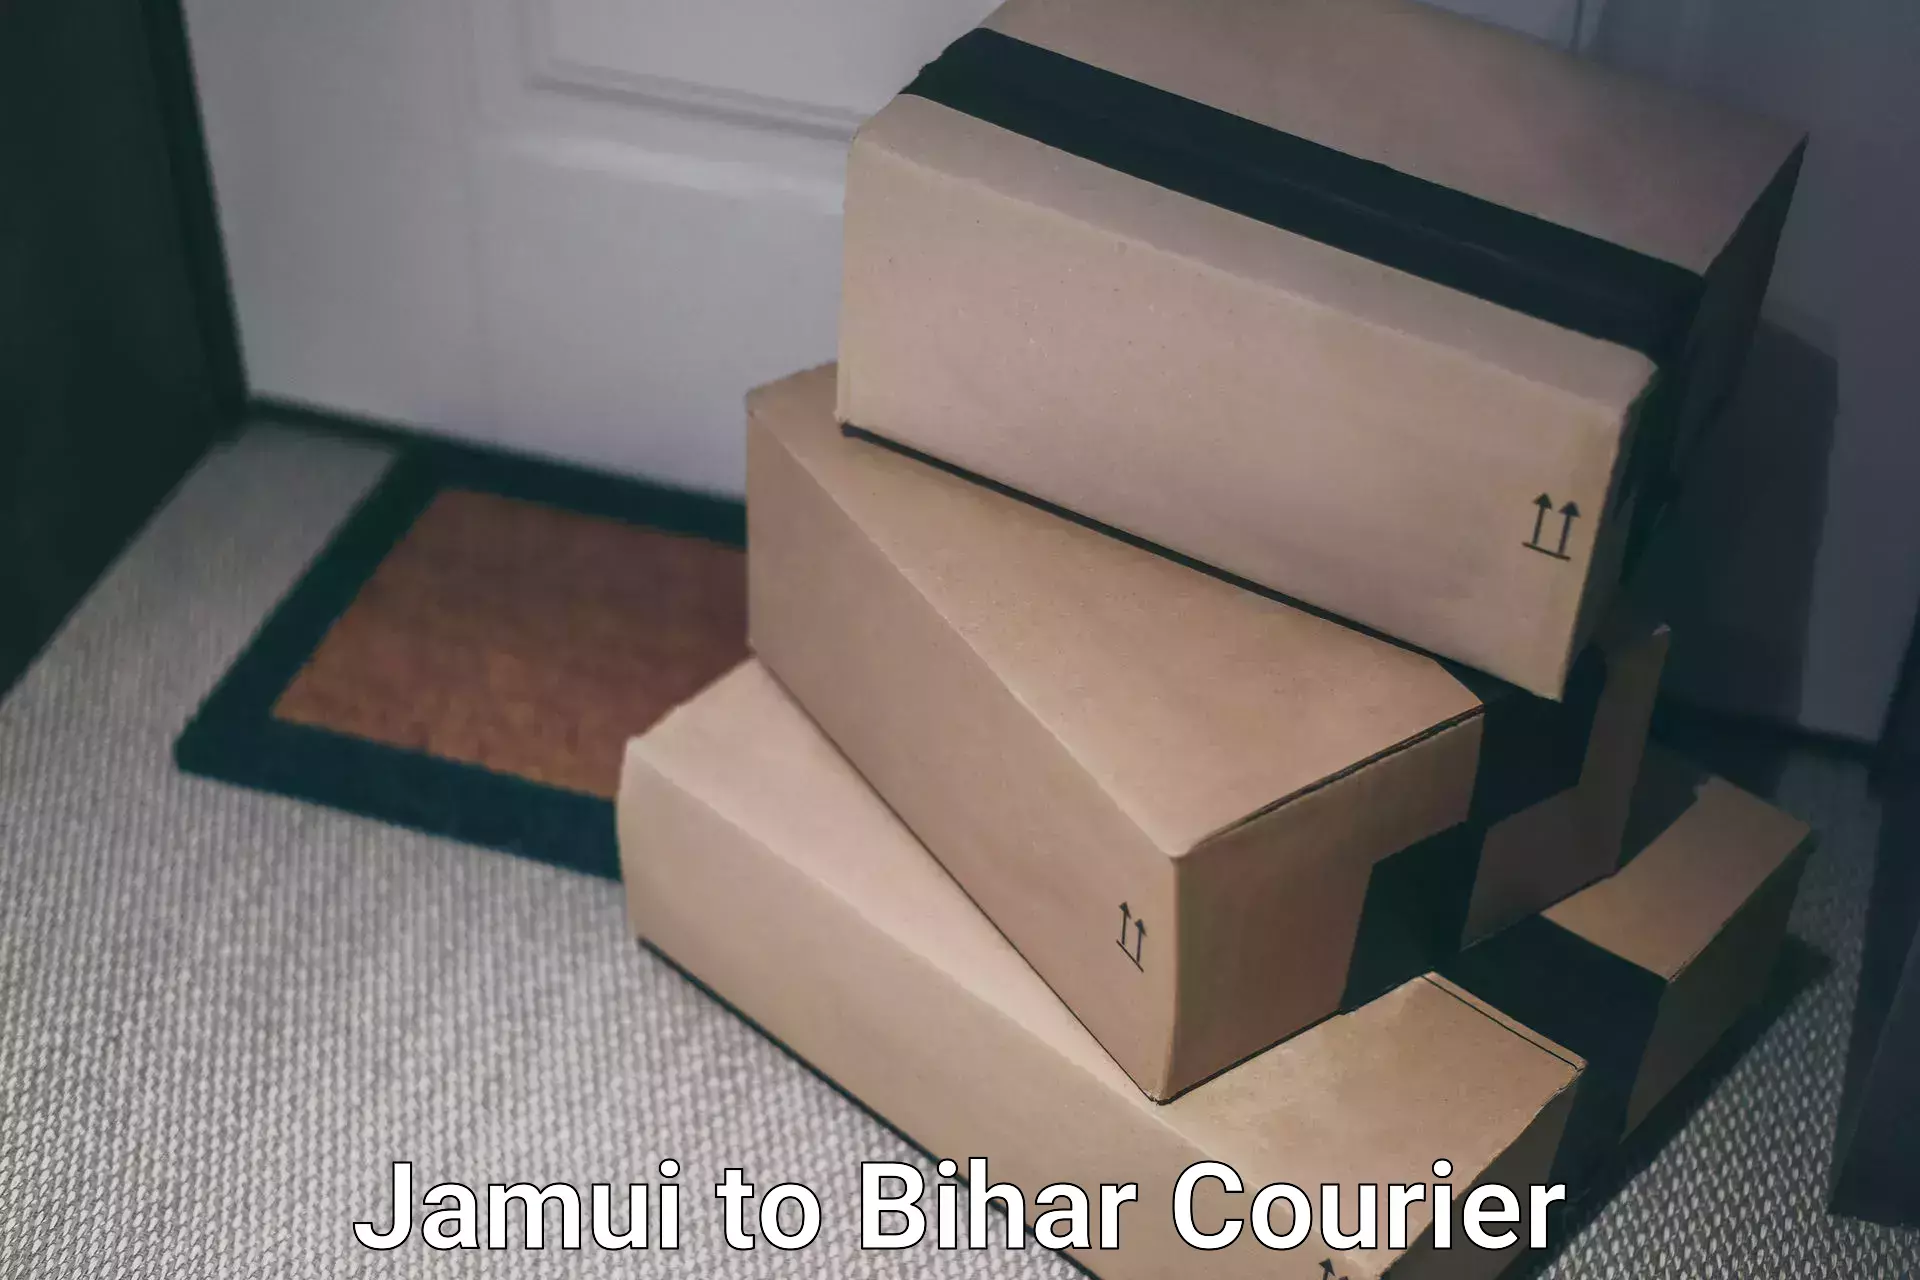 Next-day delivery options Jamui to Gopalganj